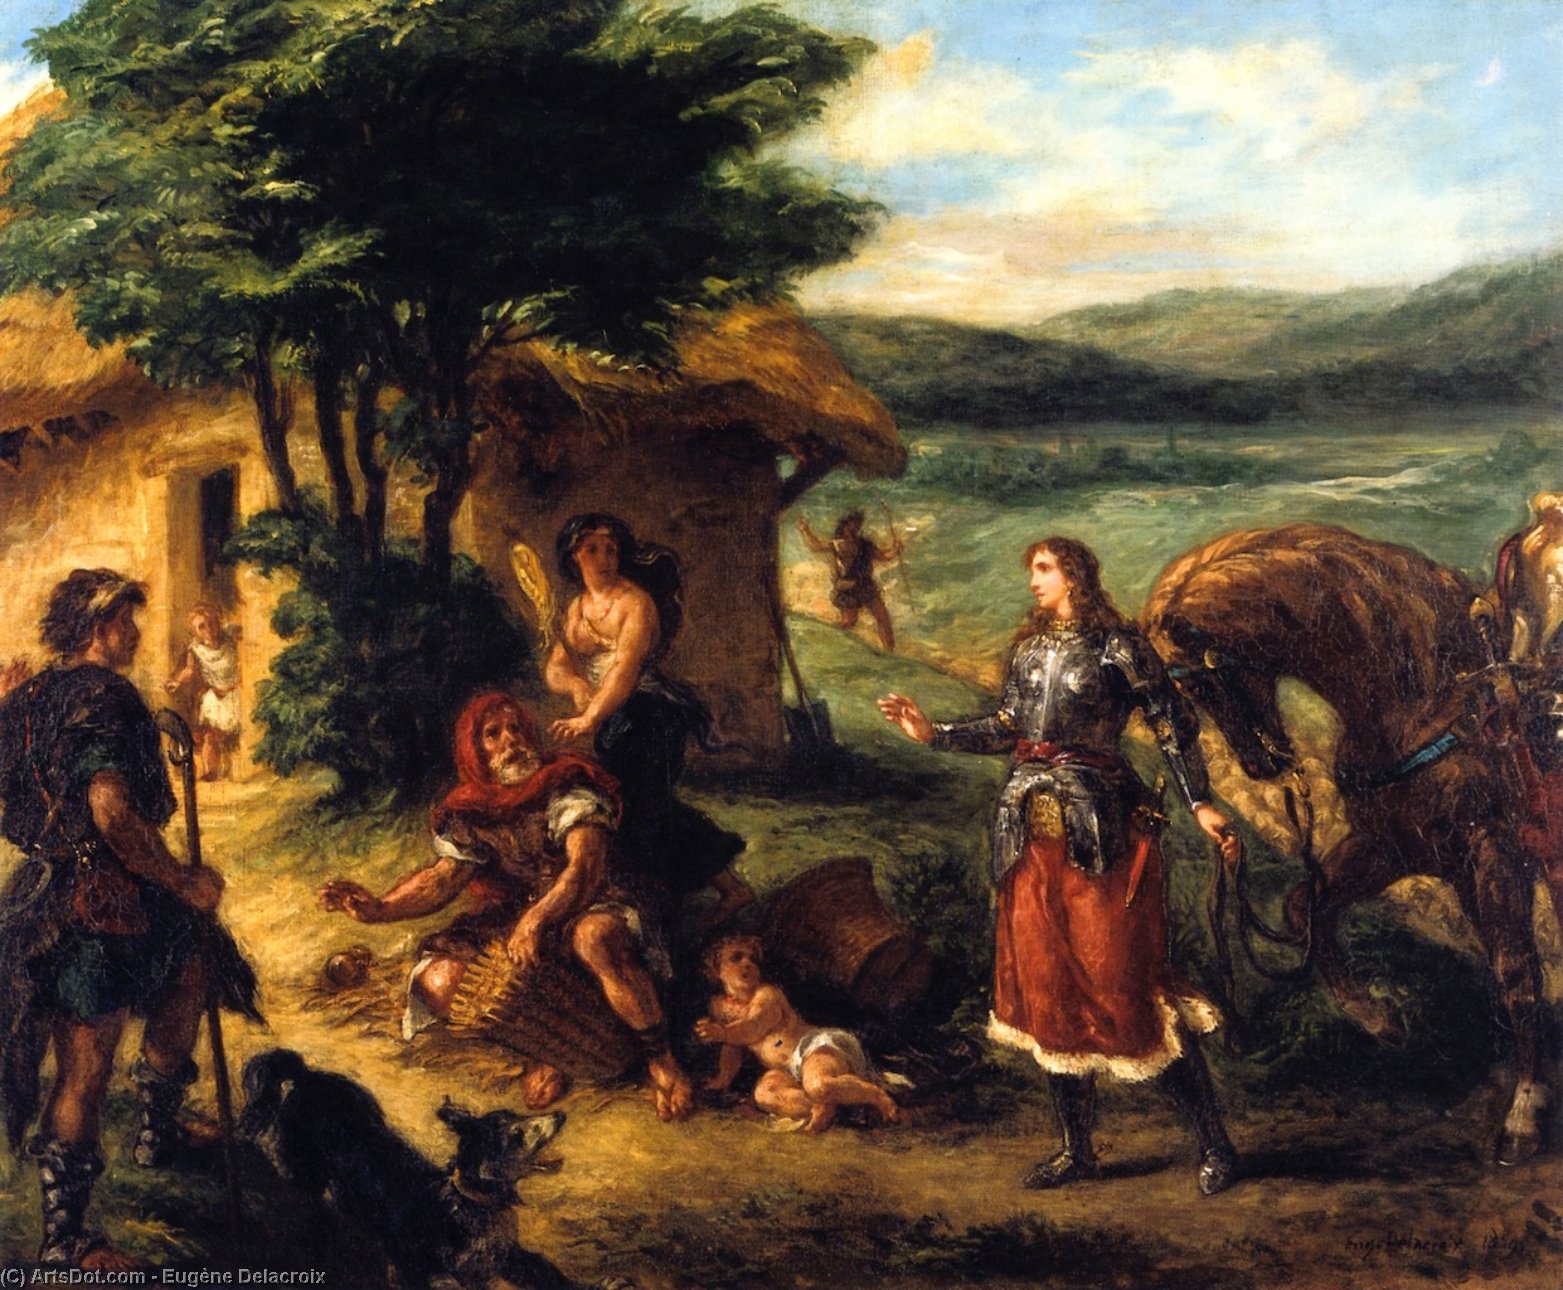 WikiOO.org - Enciclopédia das Belas Artes - Pintura, Arte por Eugène Delacroix - Erminia and the Shepherds